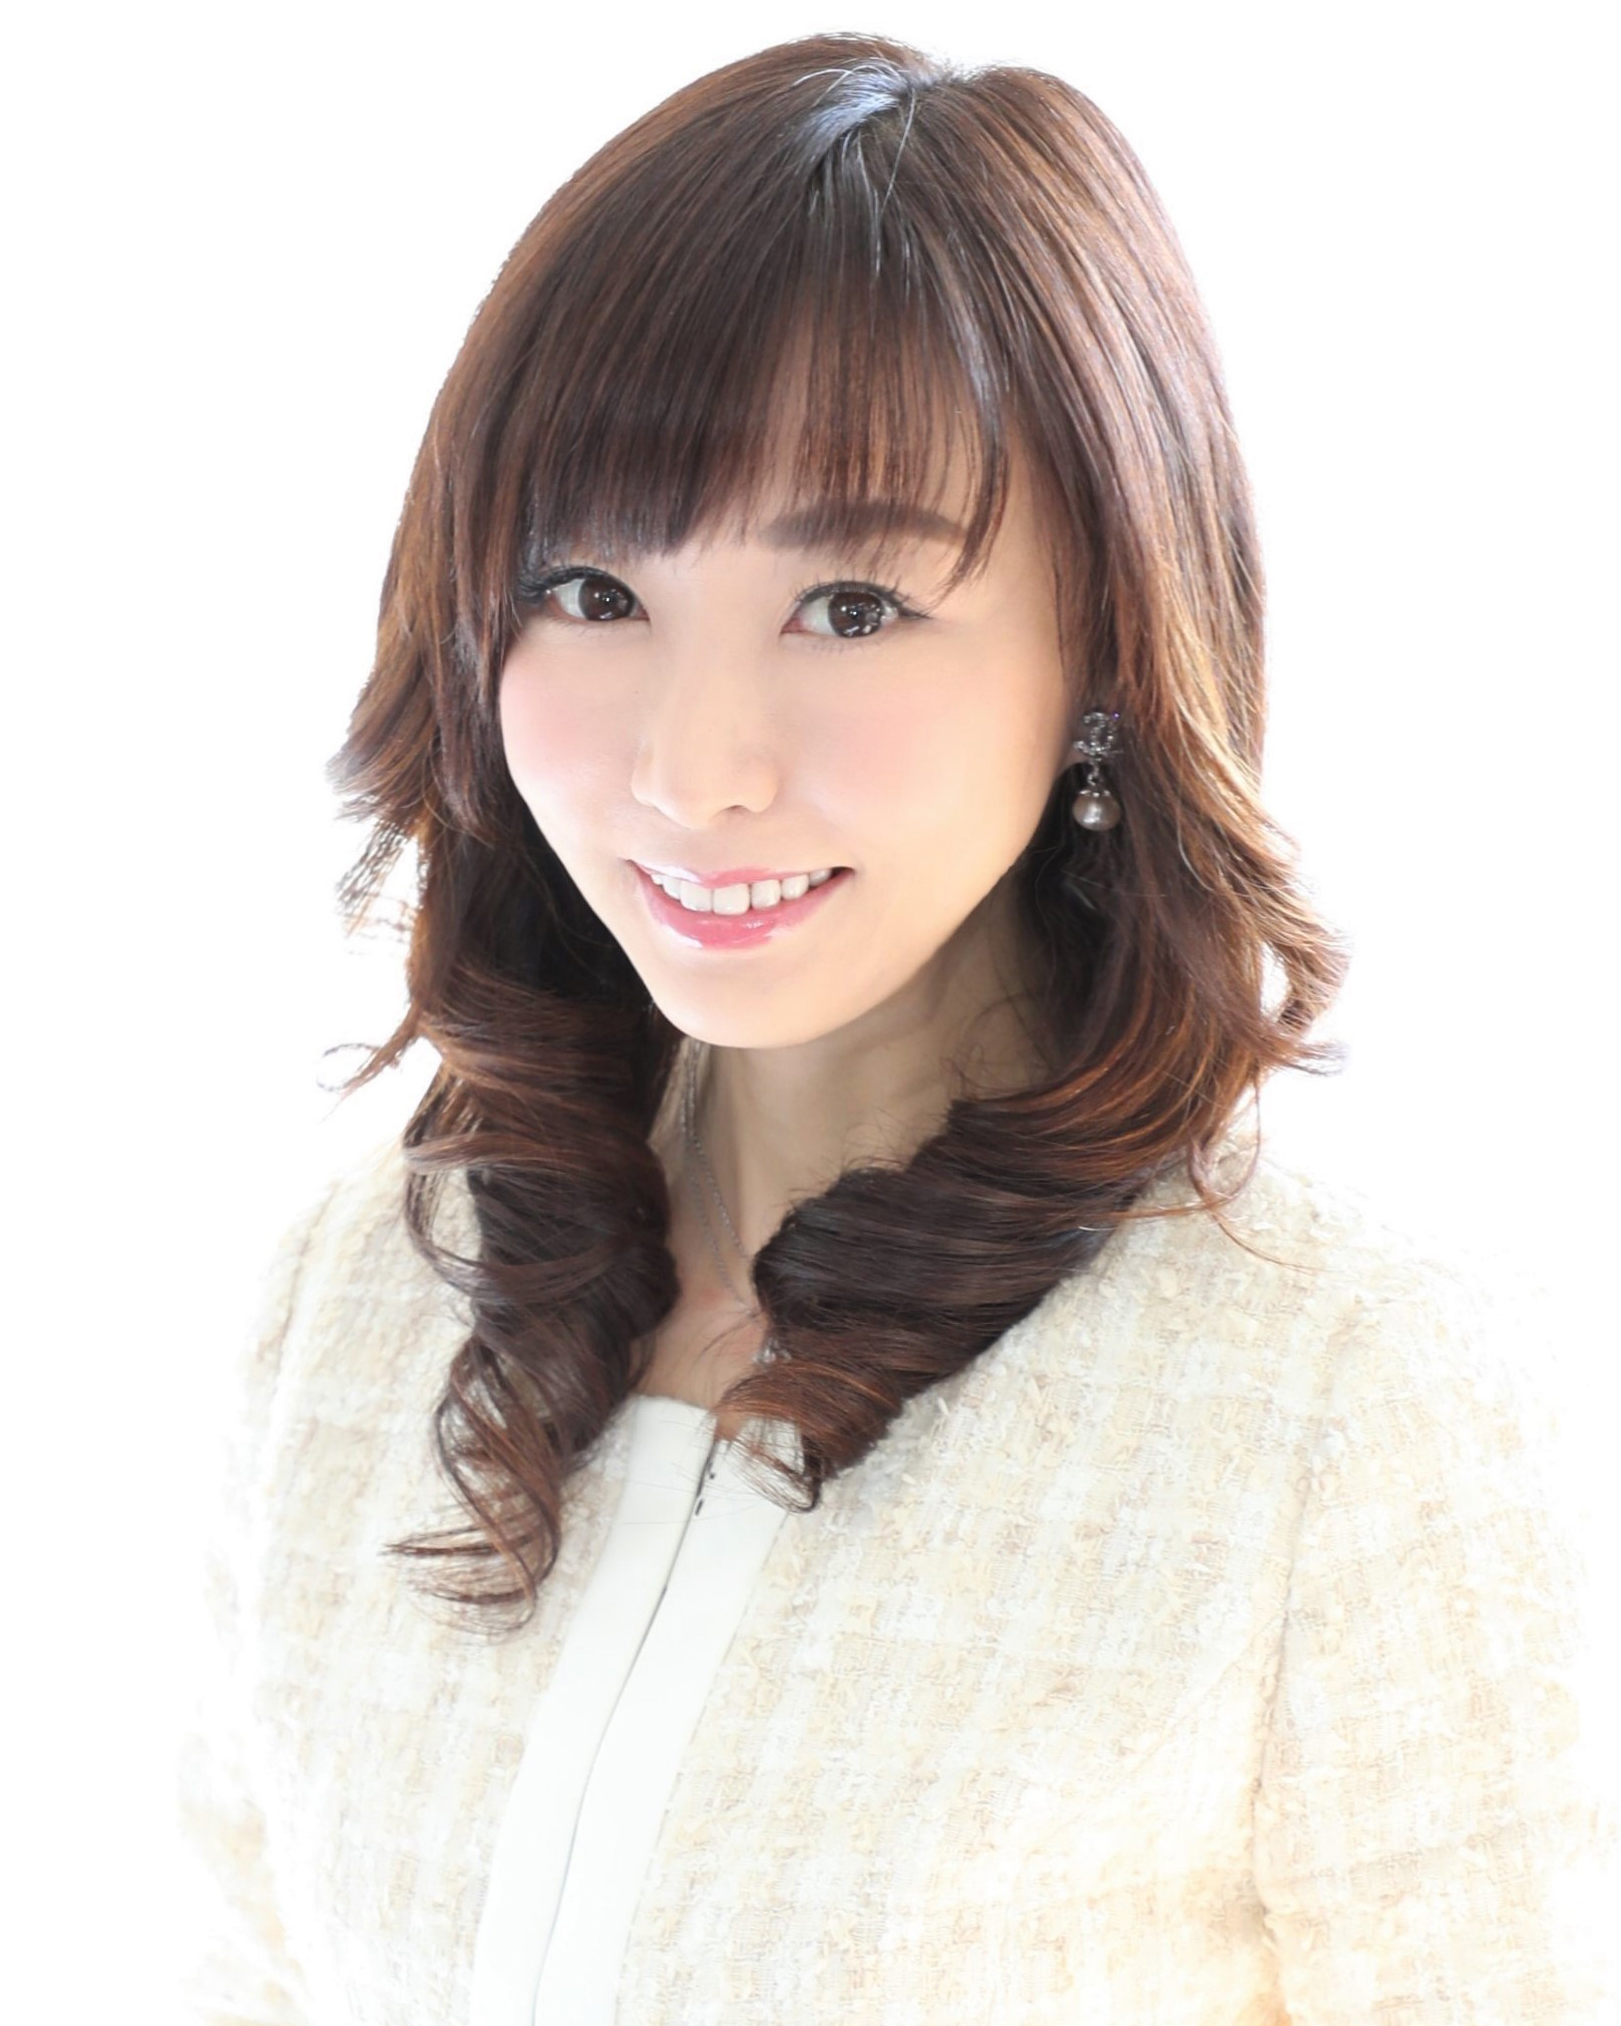 髙濱優子のプロフィール画像